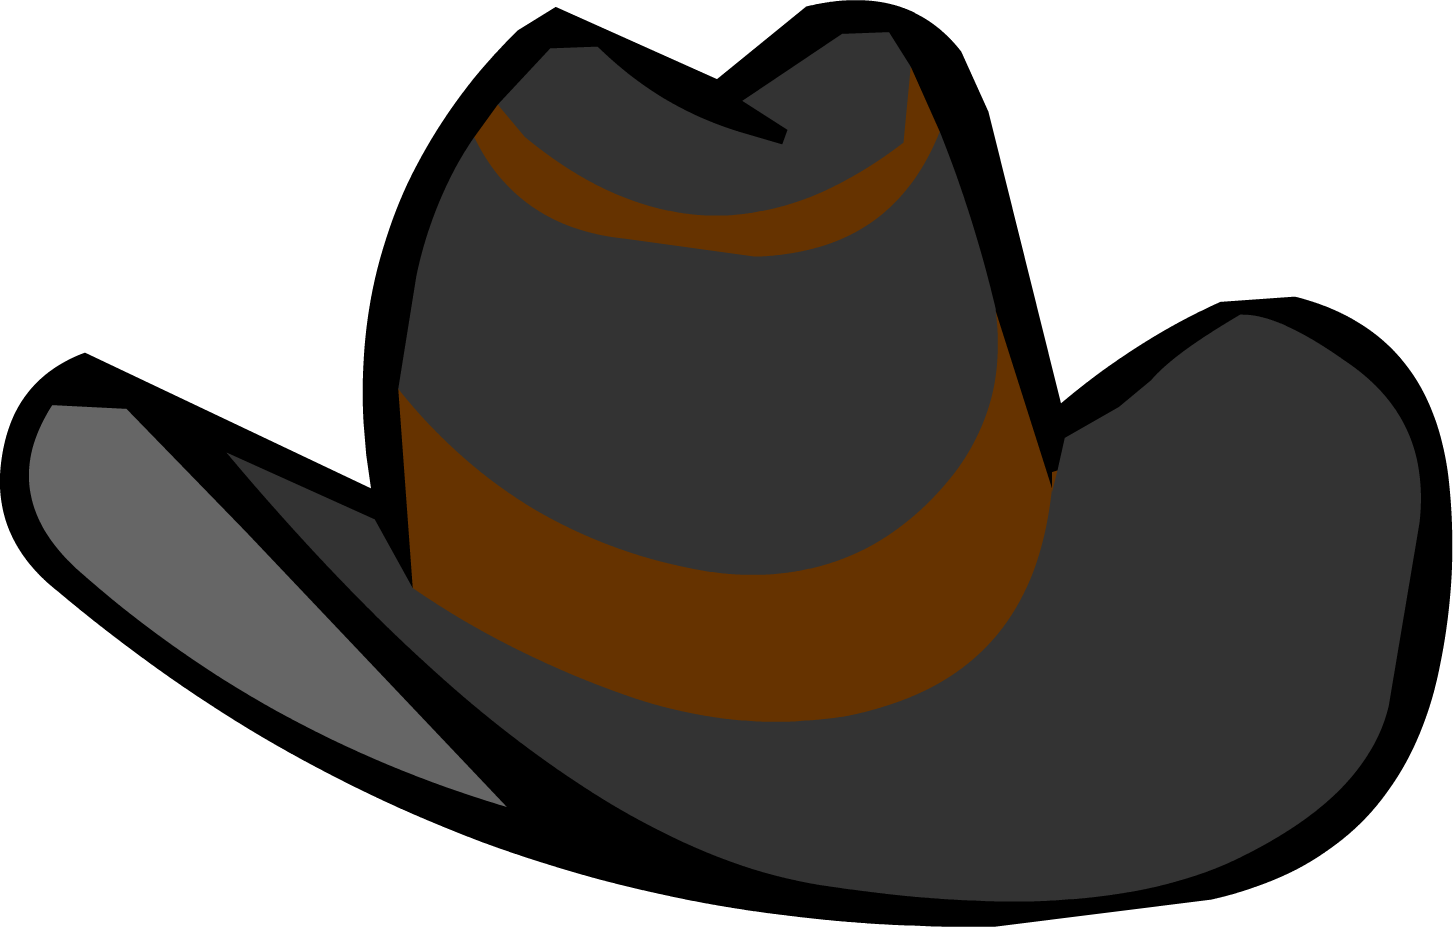 Cowboy Hat Free PNG Image